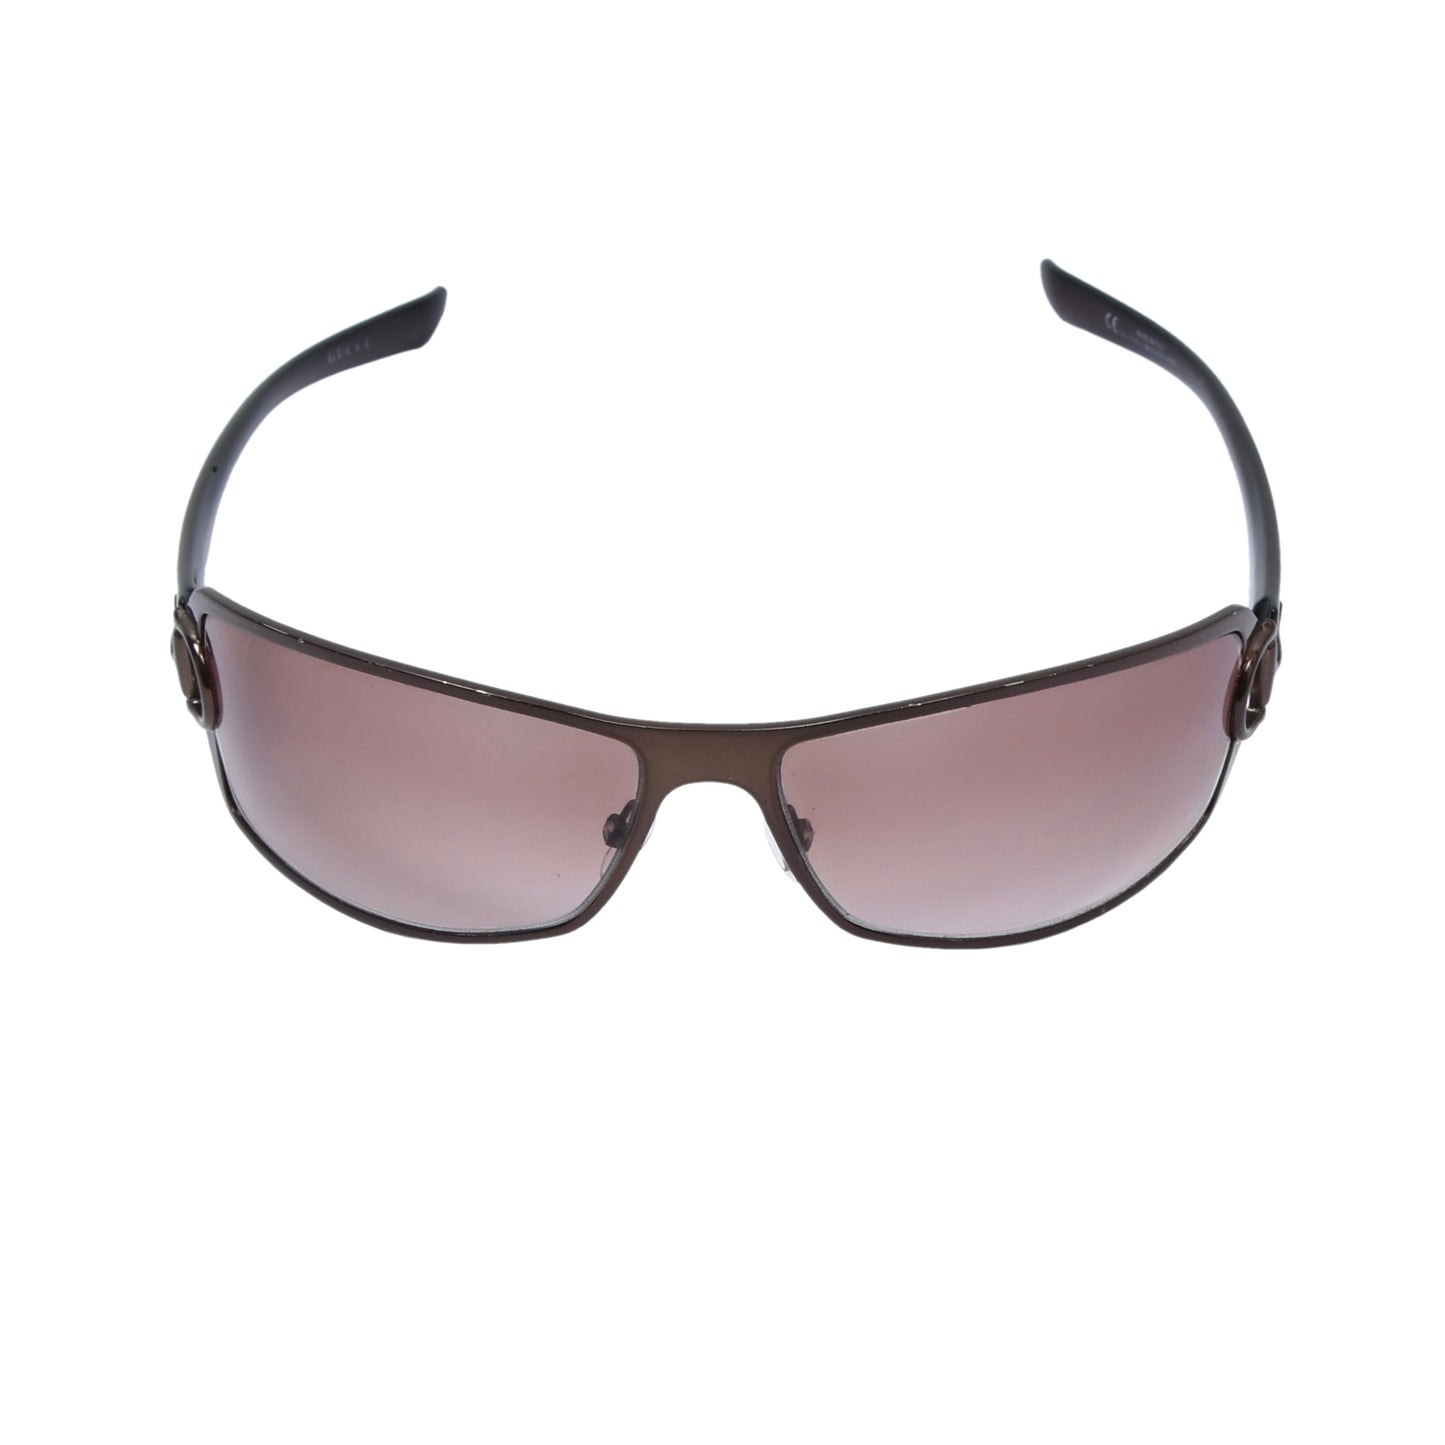 Gucci Mod. GG2739 Sunglasses - Brown/Copper